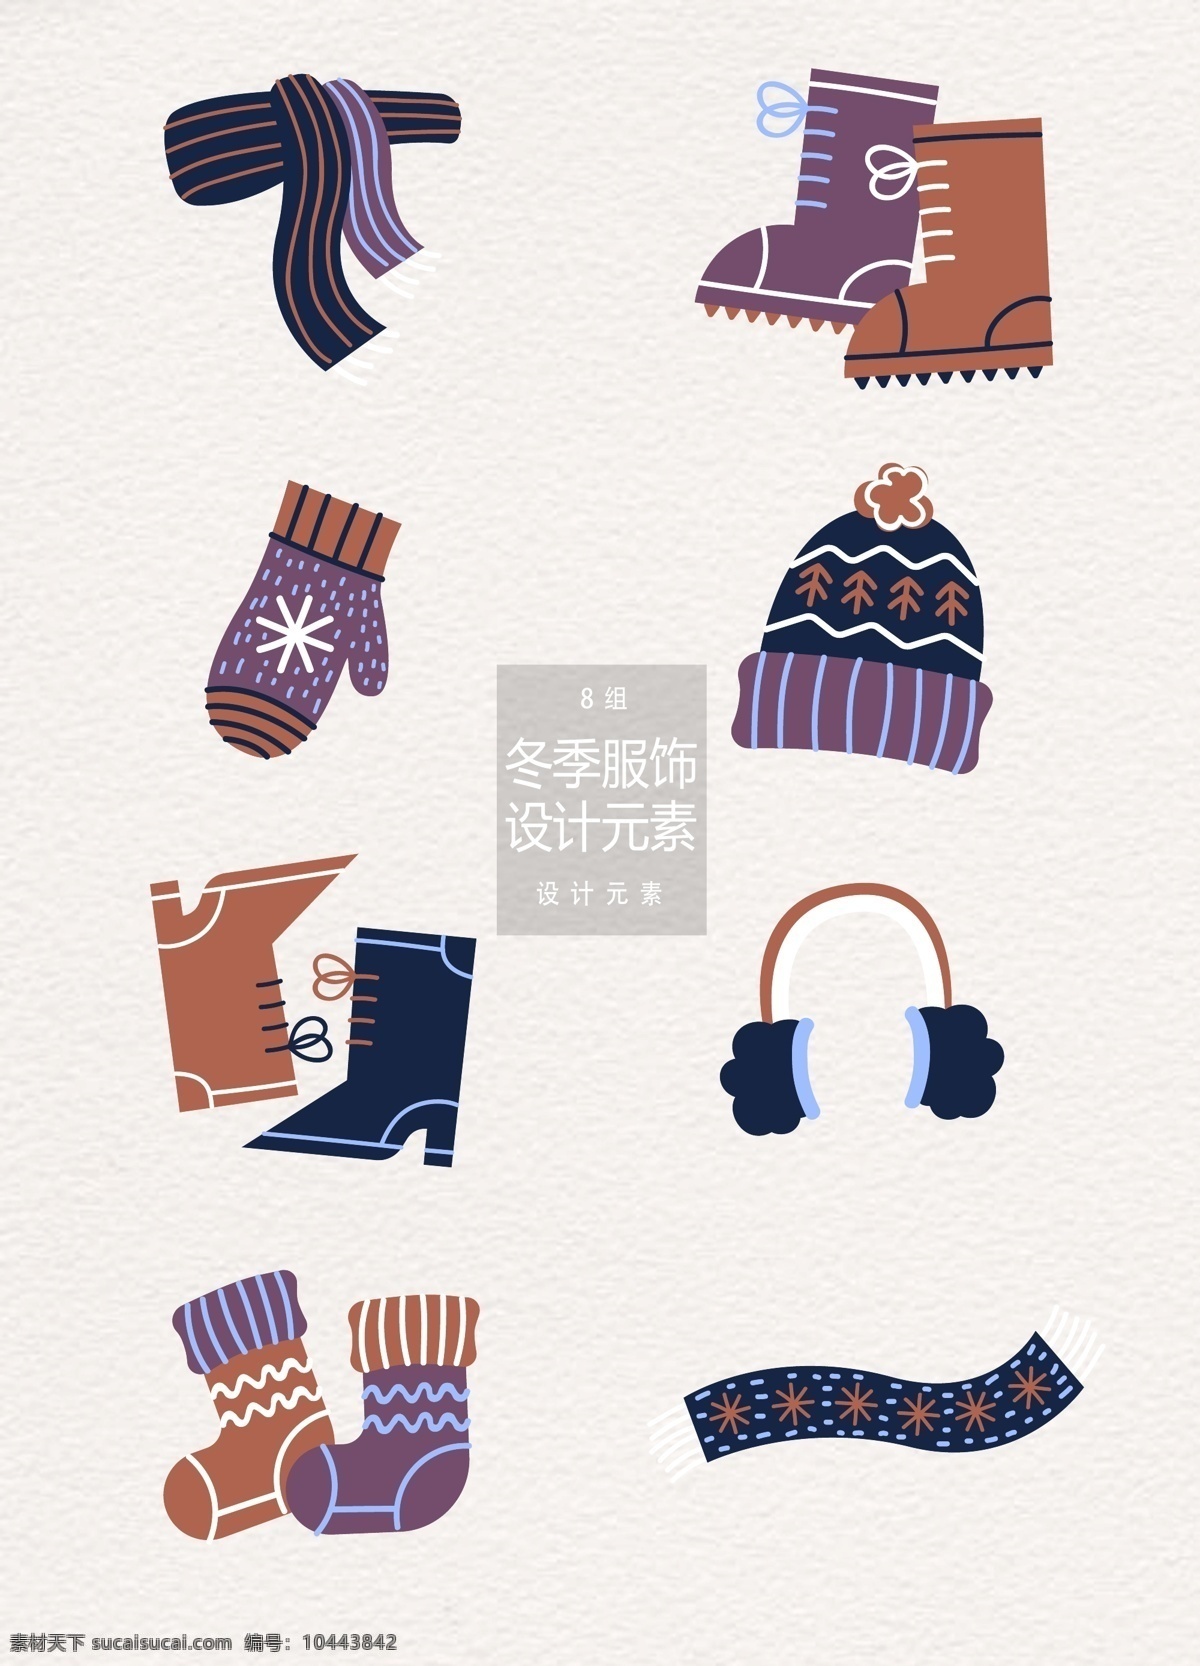 冬季 冬天 服饰 元素 衣服 帽子 袜子 冬天服饰 围巾 靴子 手套 耳罩